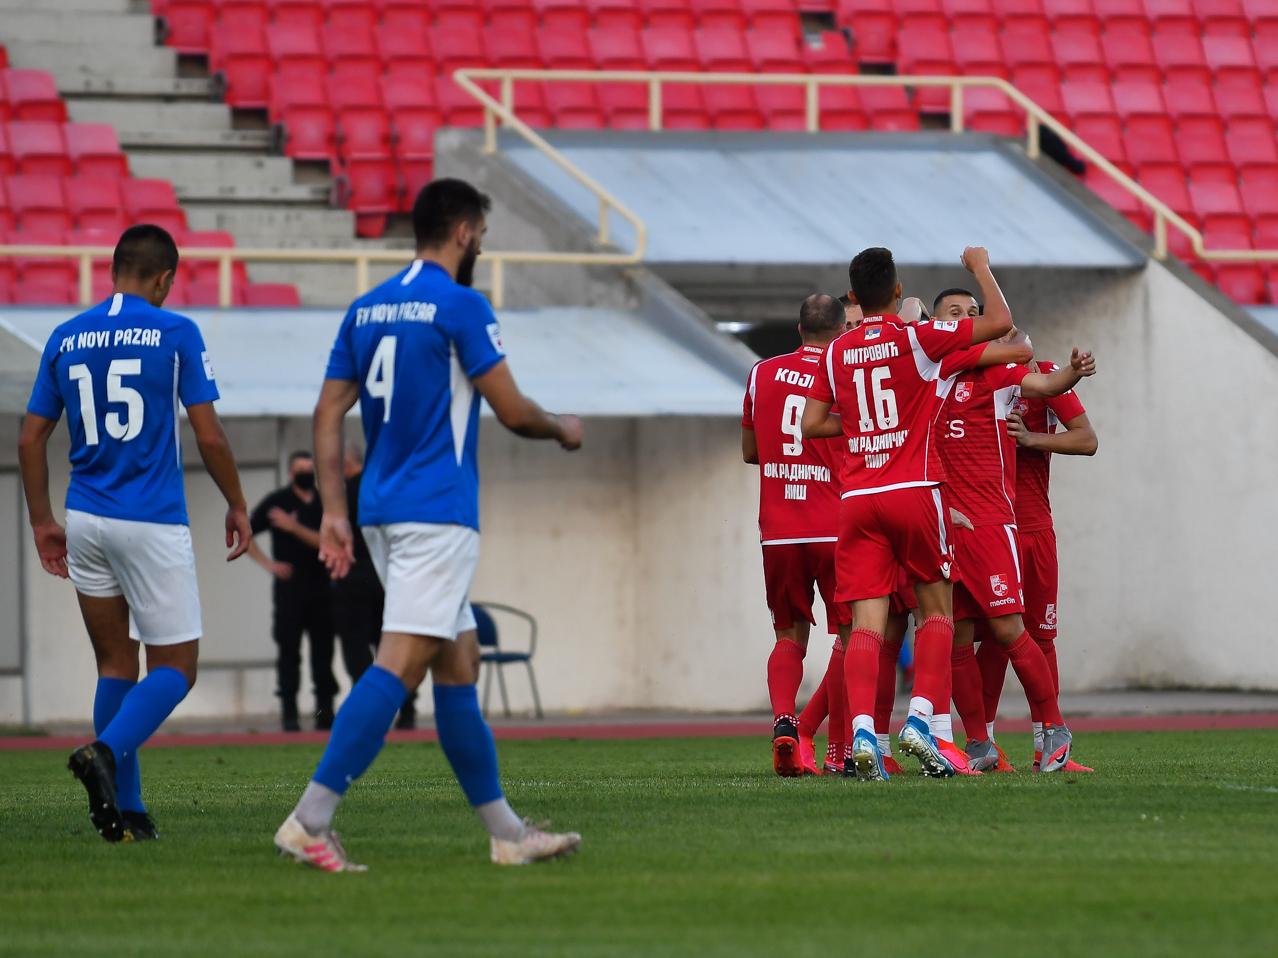 FK Radnički slavio na tradicionalno neugodnom gostovanju ekipi Novog Pazara